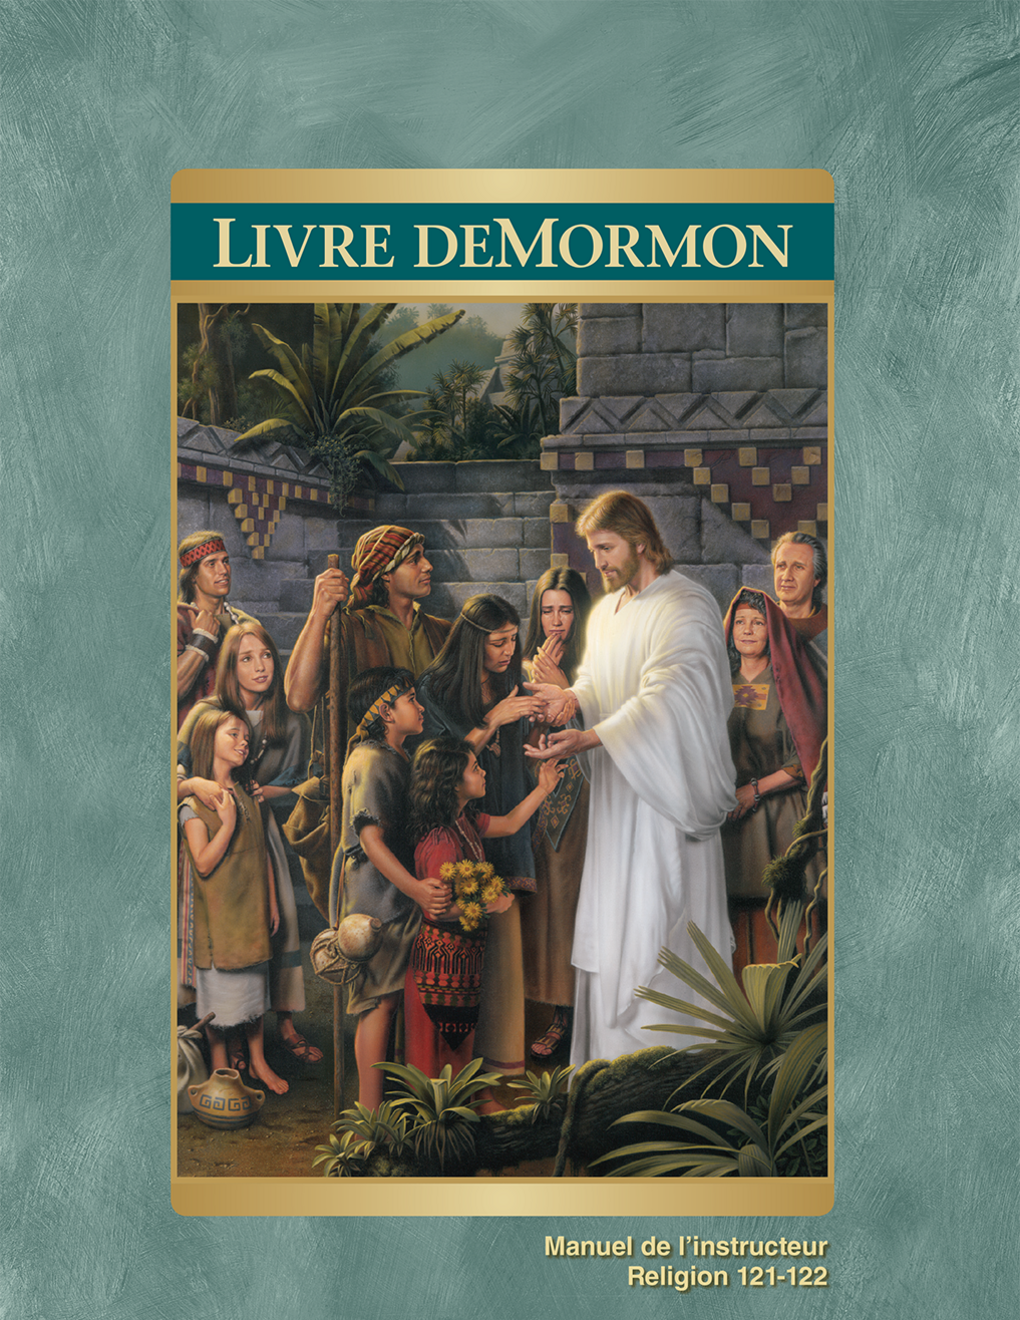 Le Livre de Mormon, manuel de l’instructeur (Religion 121-122)